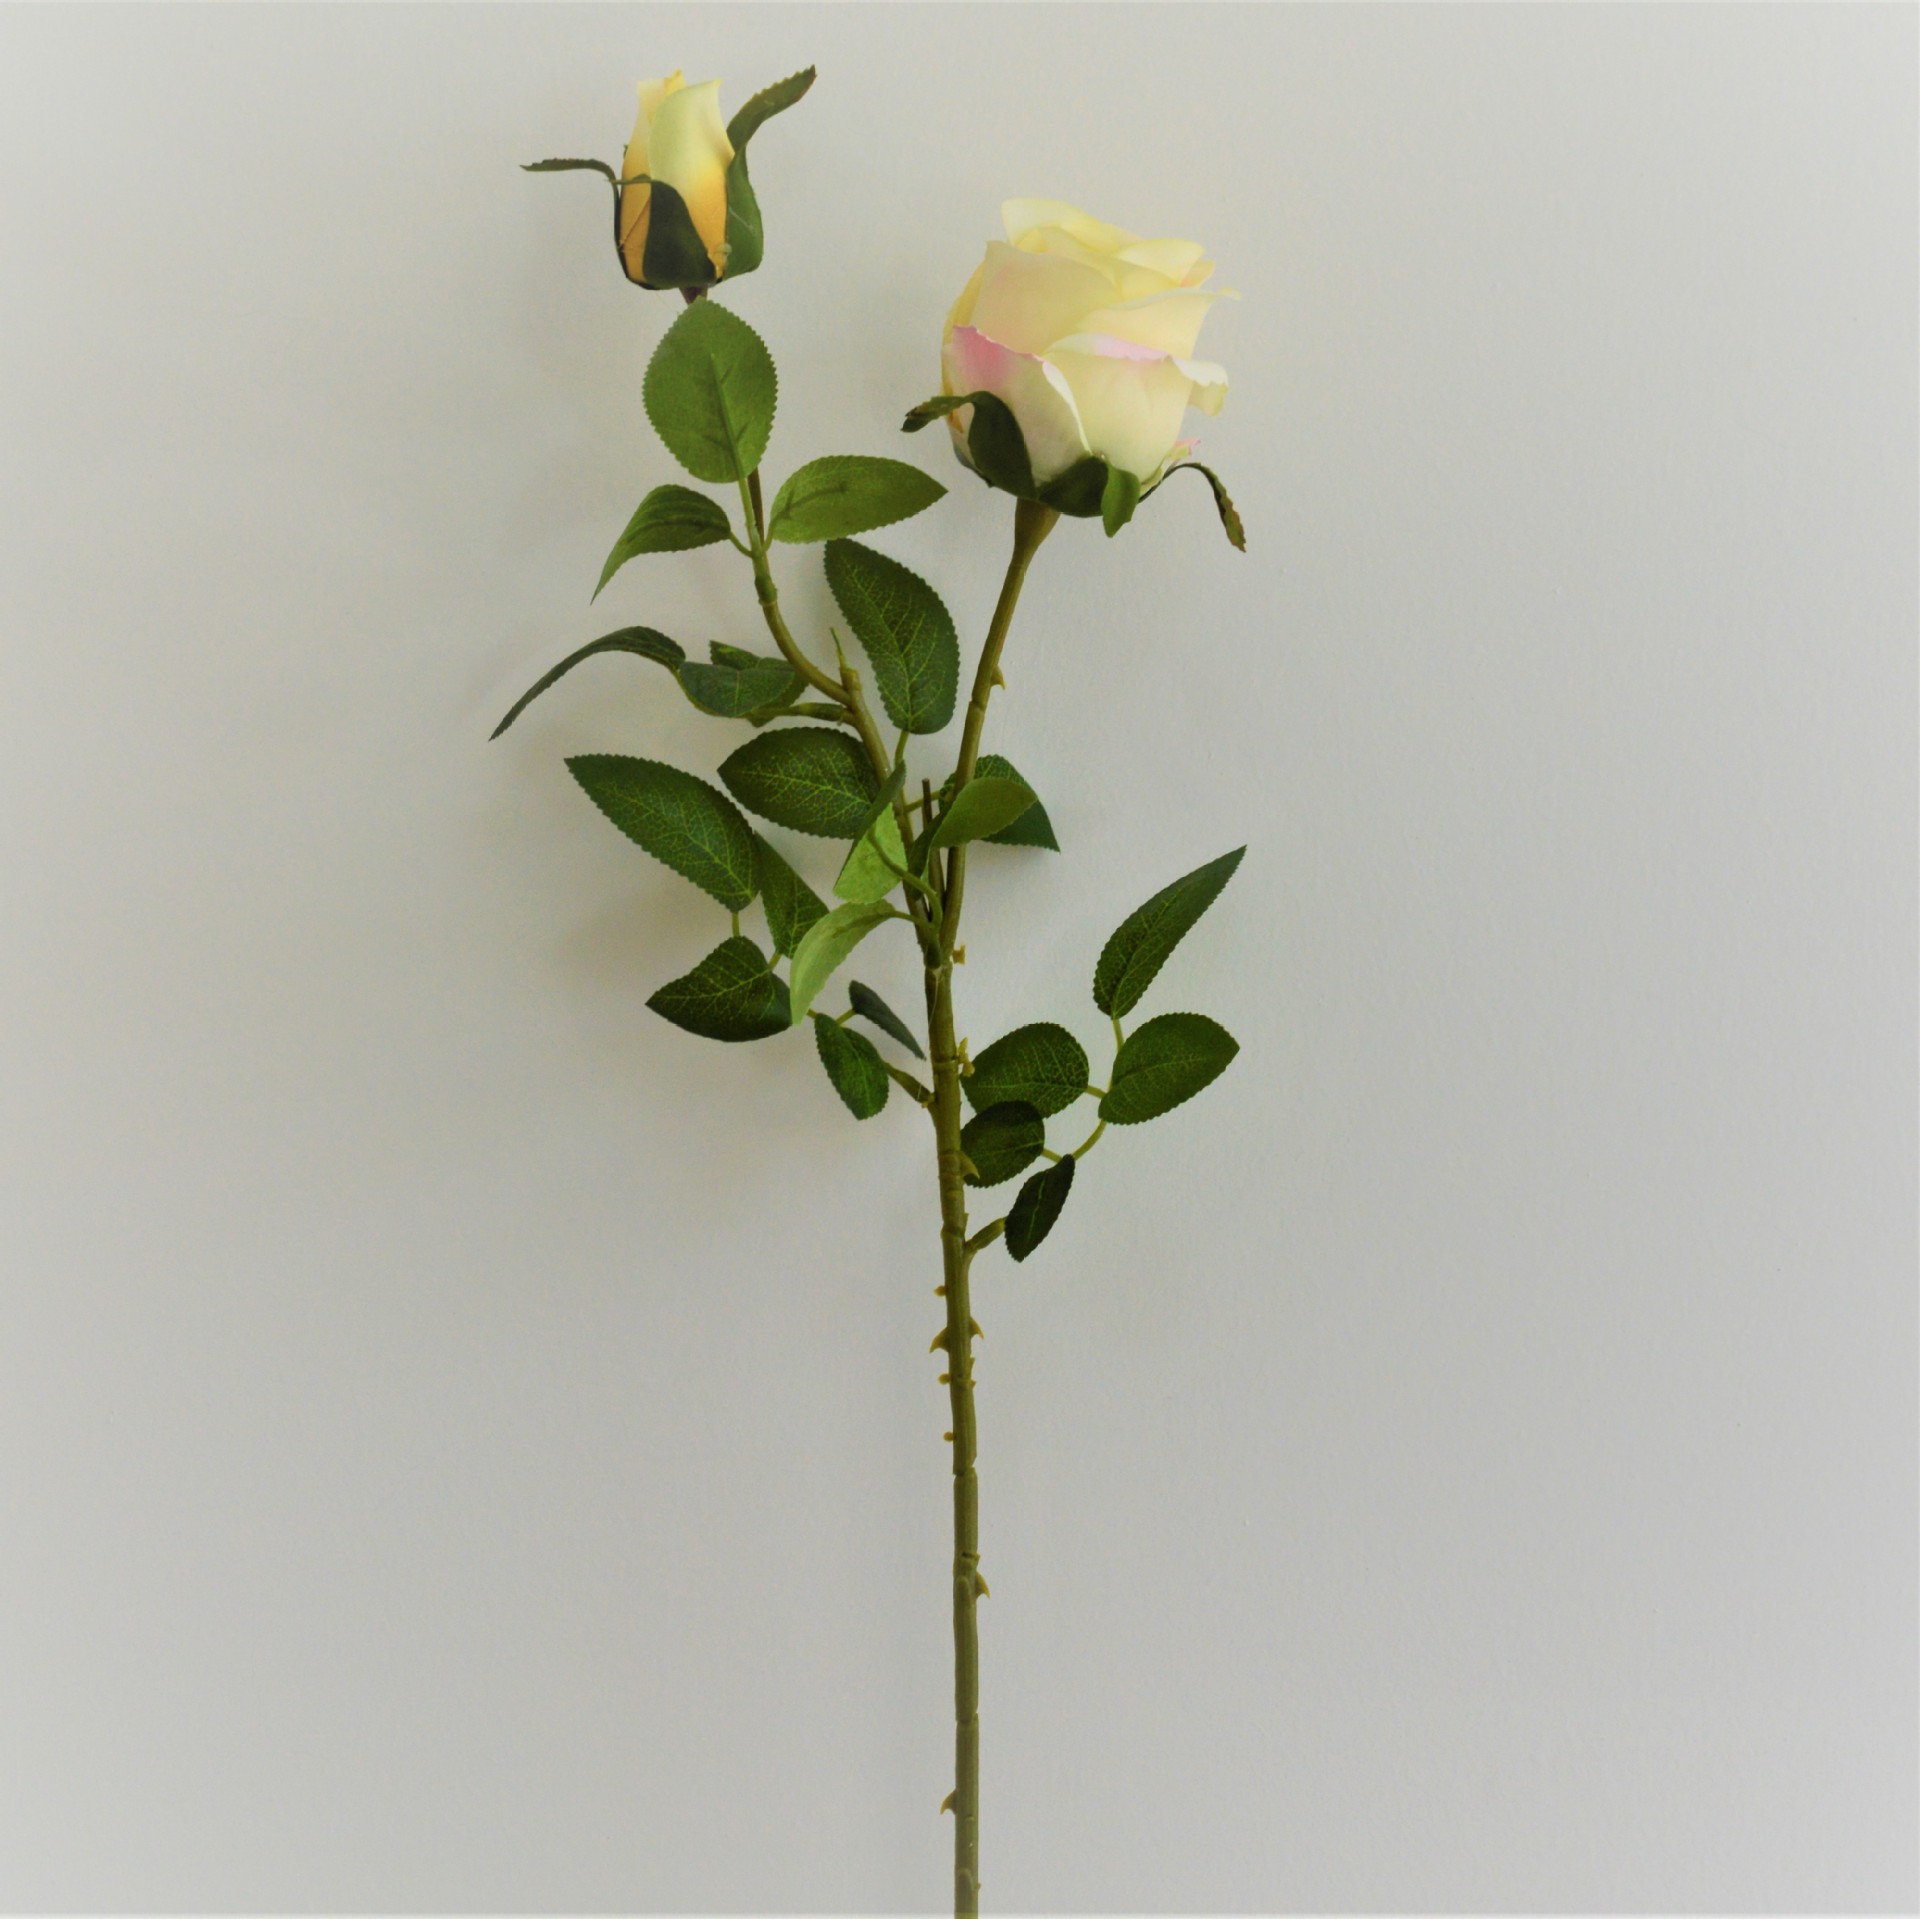 玫瑰】 【尺寸】总长68cm    【材质】花朵-绢布/叶片-绢布/枝干-塑胶